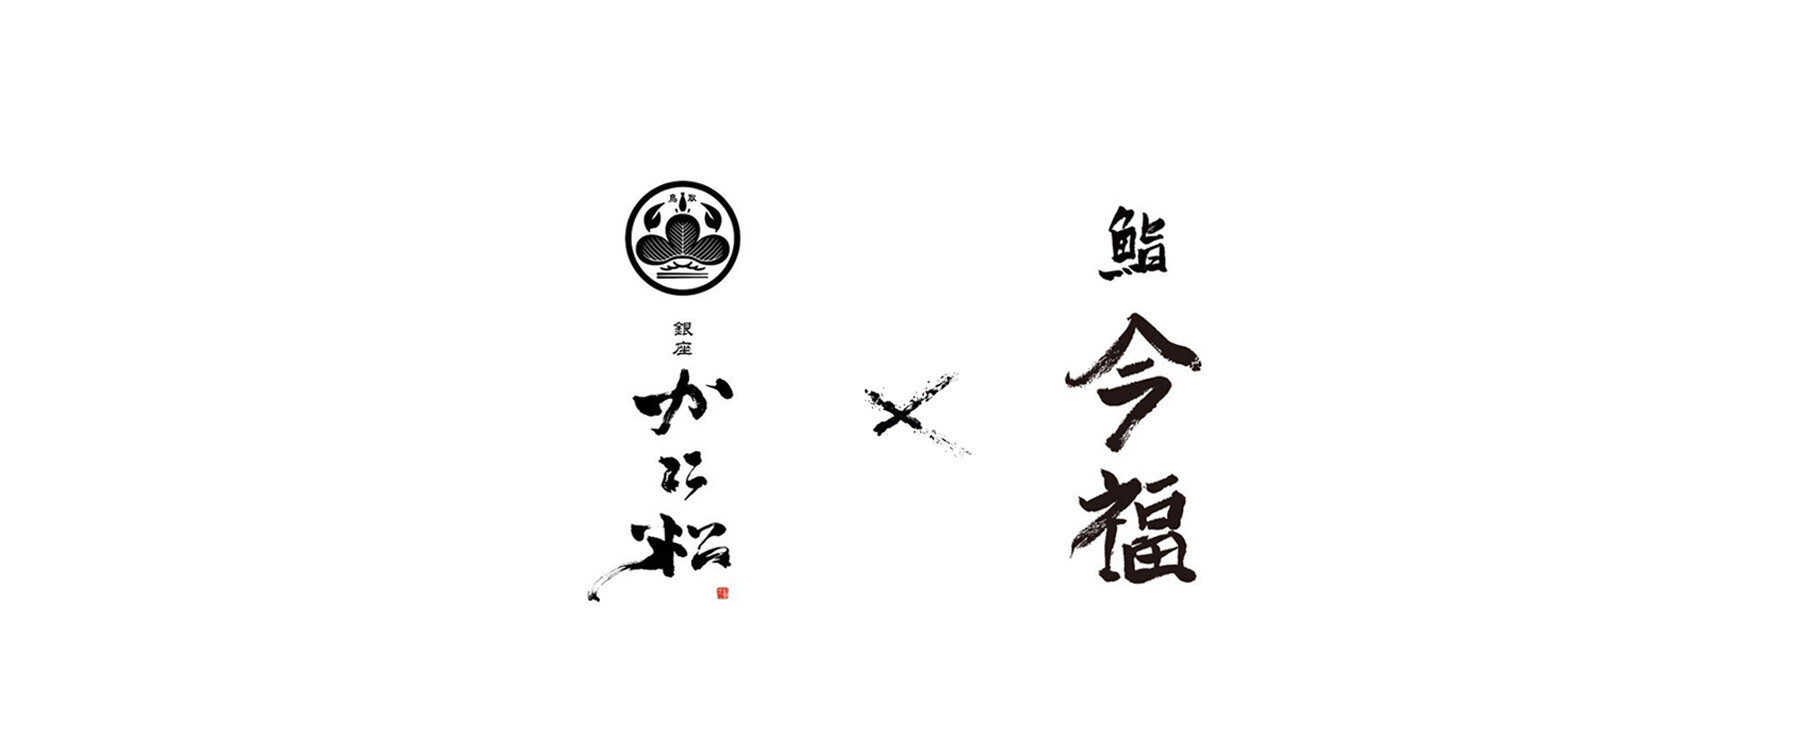 【Finished】【Noto Support Friendship Restaurant】Ginza Kanimatsu × Sushi Imafuku's images1